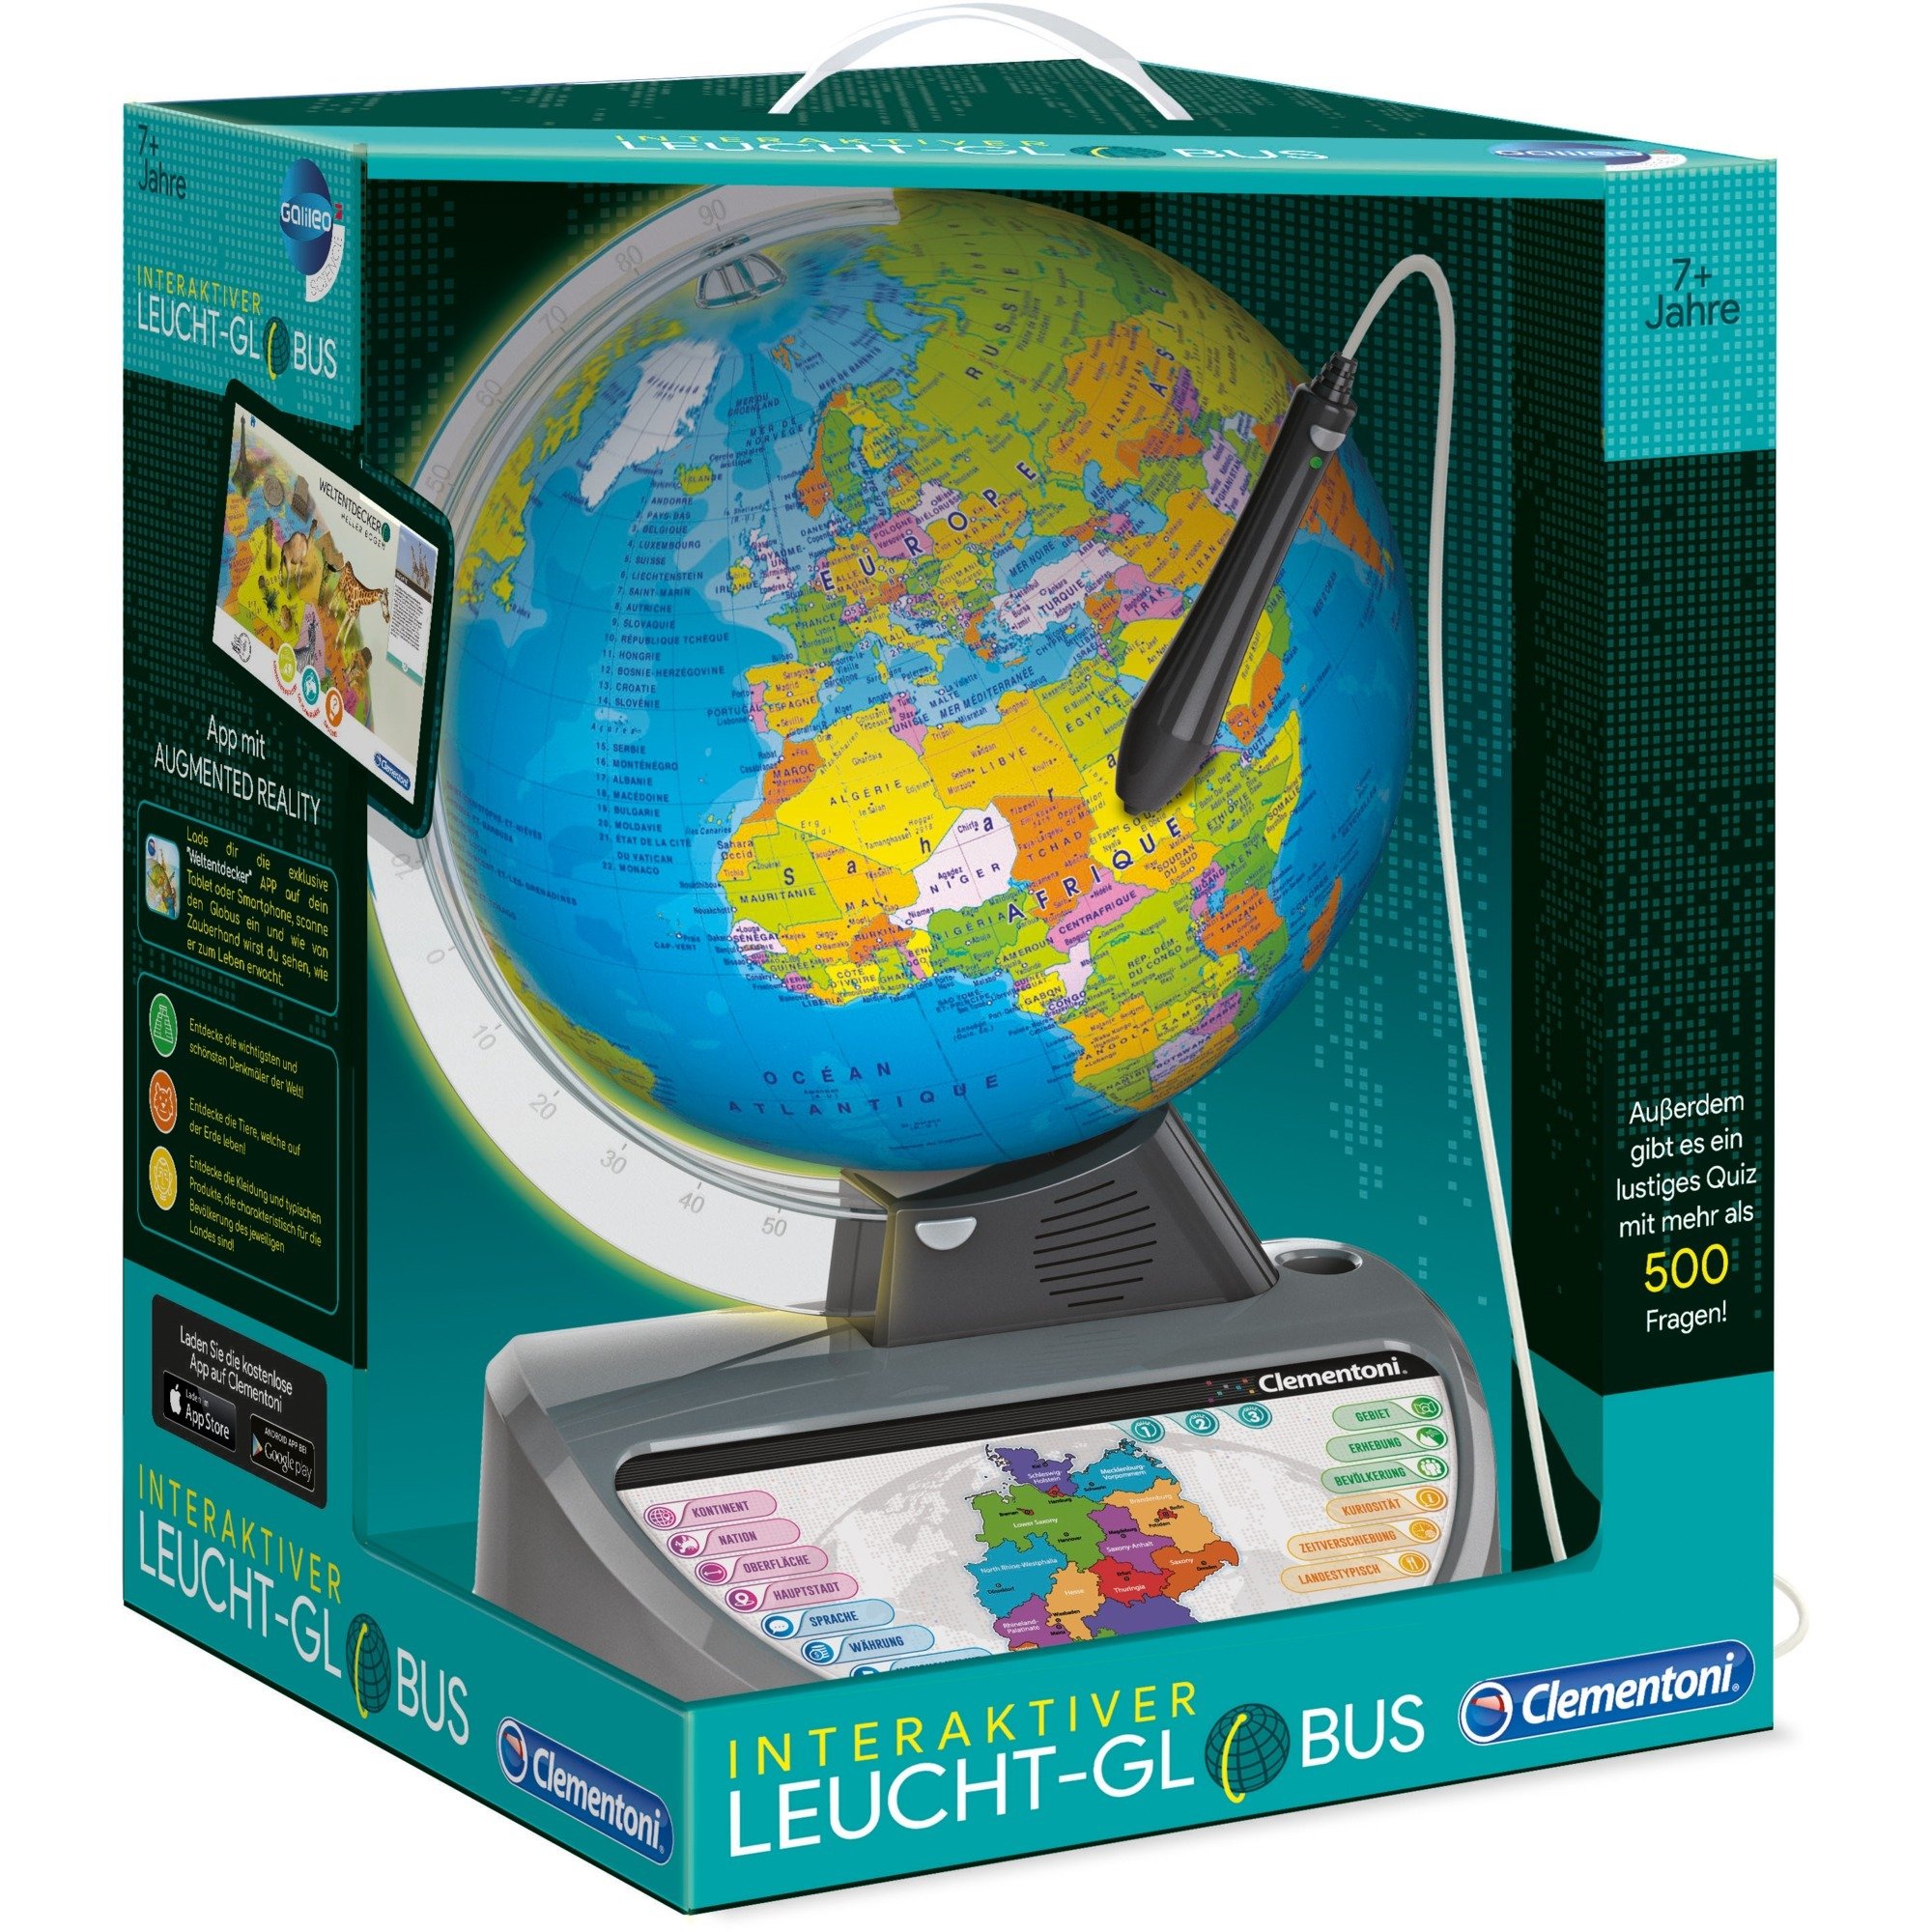 Image of Alternate - Interaktiver Leucht-Globus, Lernspaß online einkaufen bei Alternate